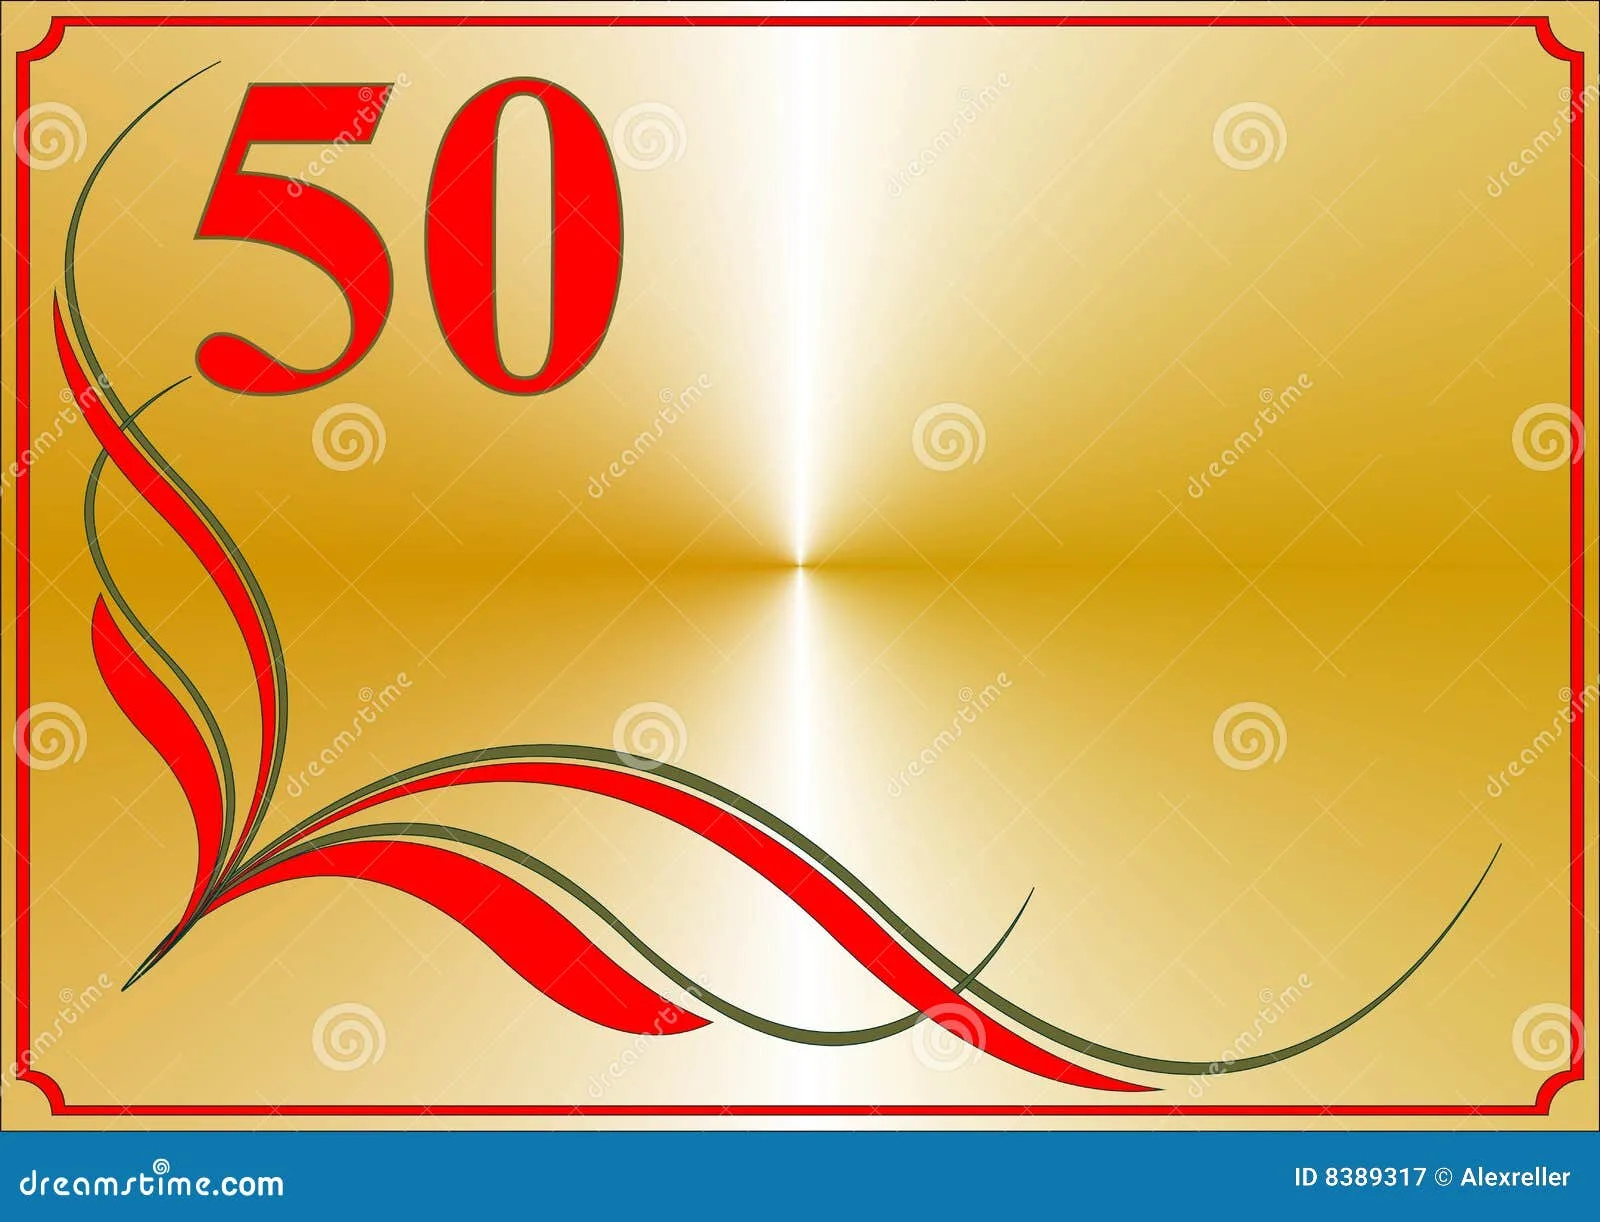 Фото Поздравления с юбилеем 50 лет фирмы (организации) #65